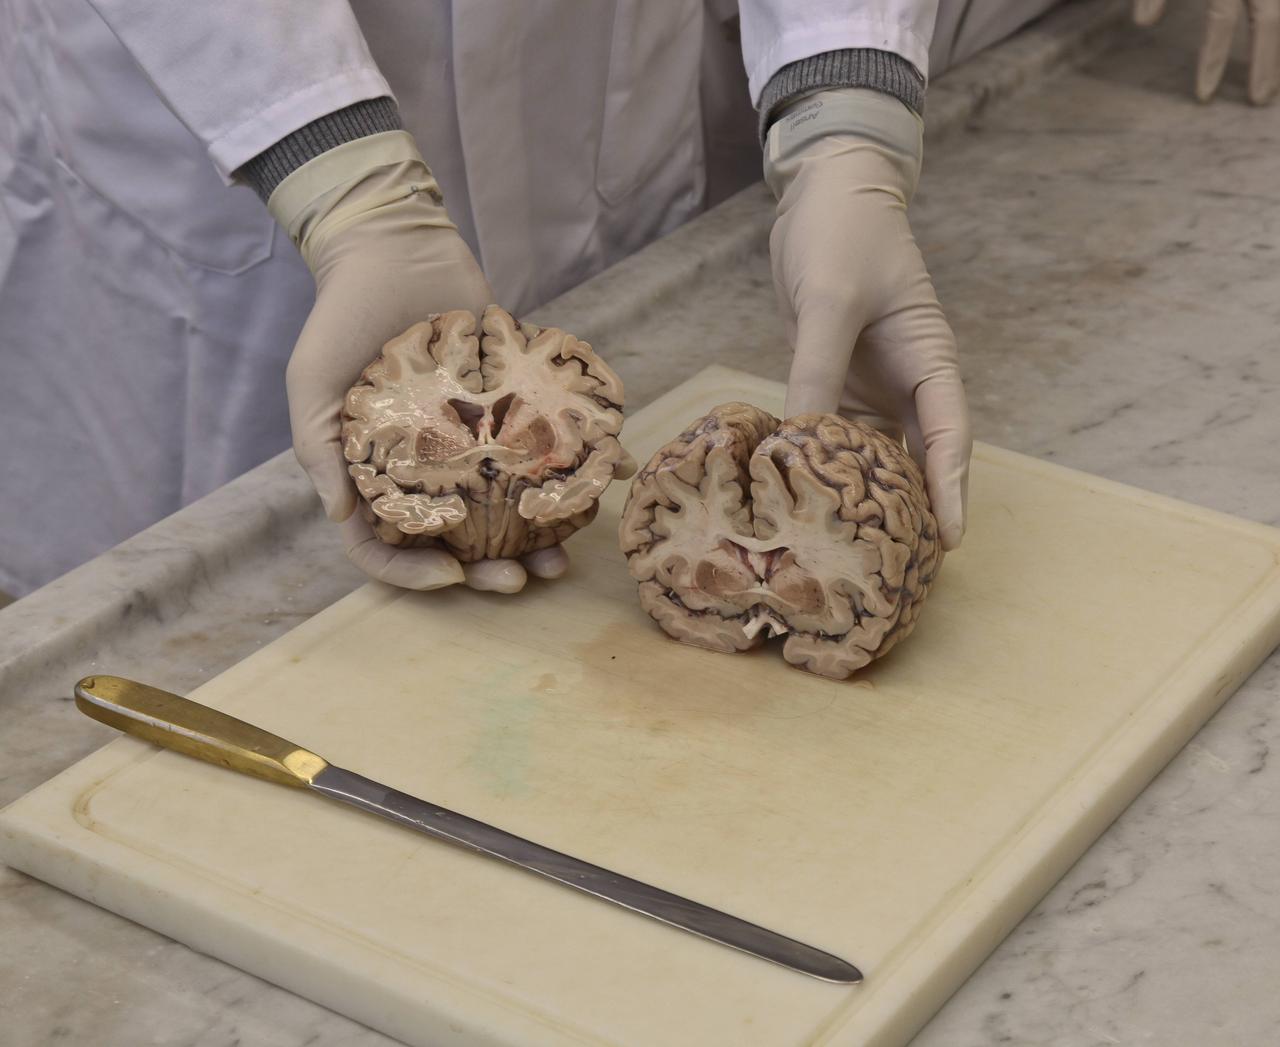 Schnitt durch das Gehirn eines verstorbenen Alzheimer-Patienten an der Berliner Charité